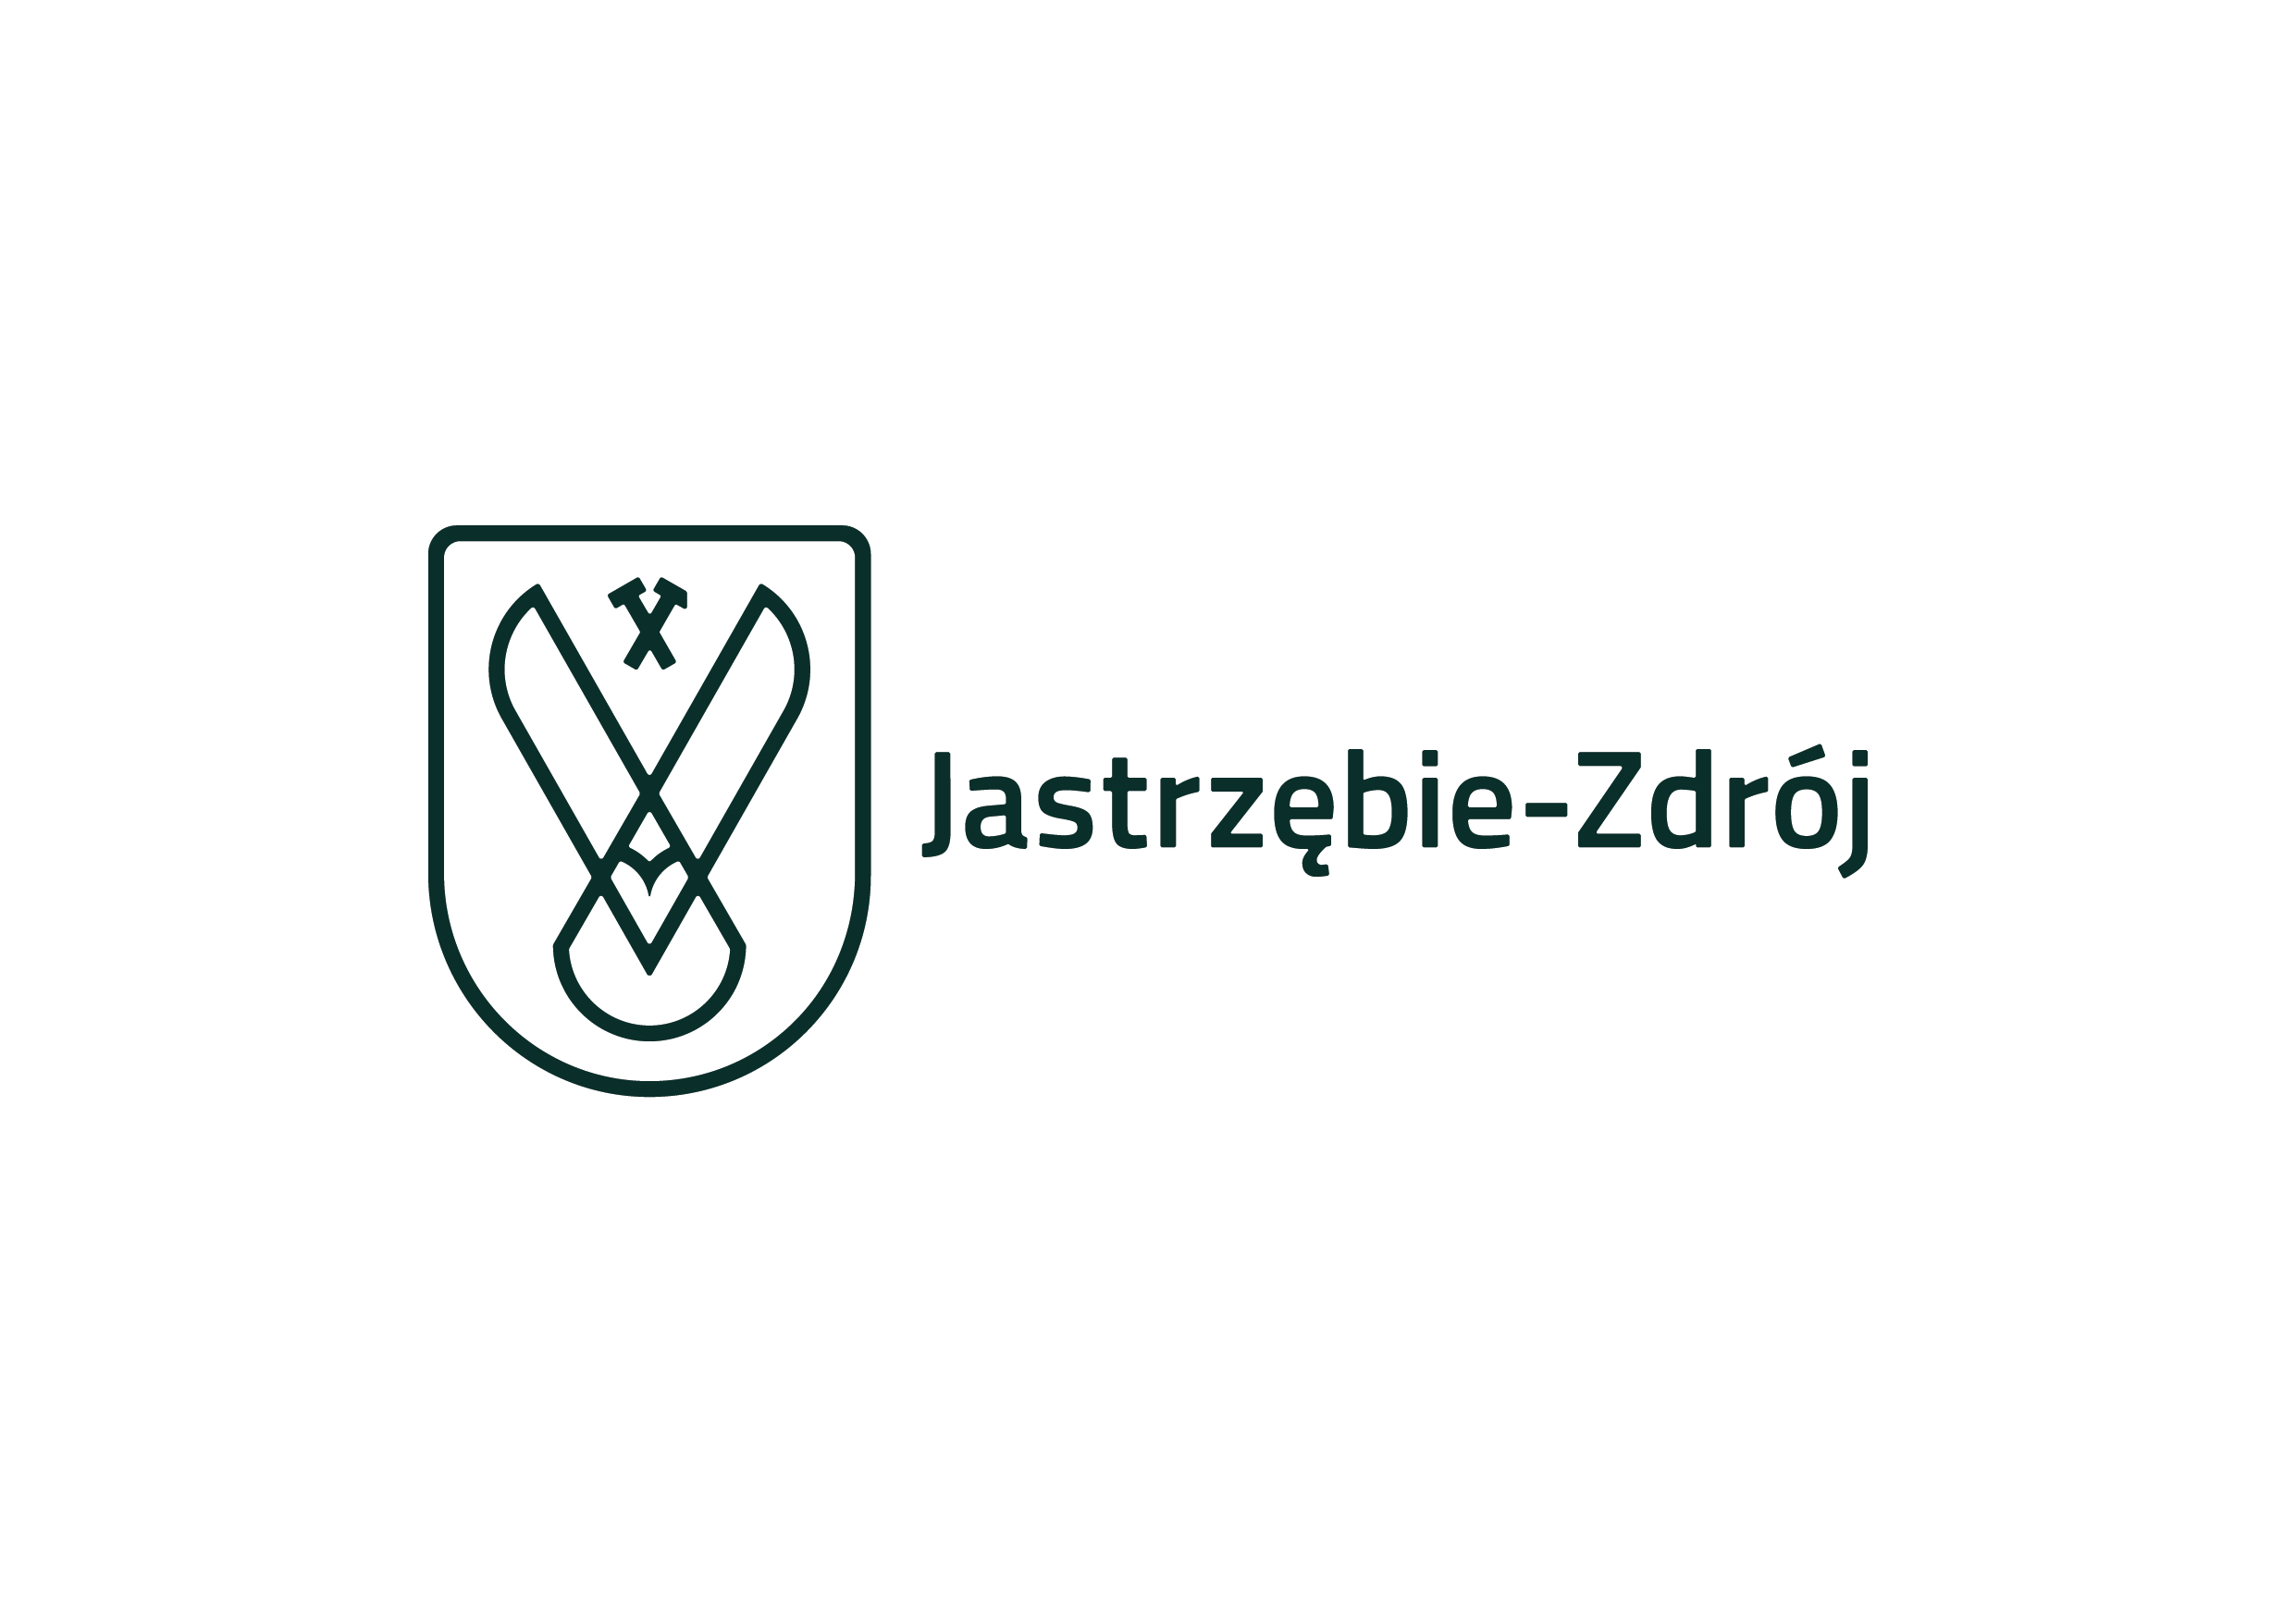 https://www.jastrzebie.pl/fileadmin/user-files/materialy-do-pobrania/jastrzebie_zdroj_logo_left_pine_white.jpg